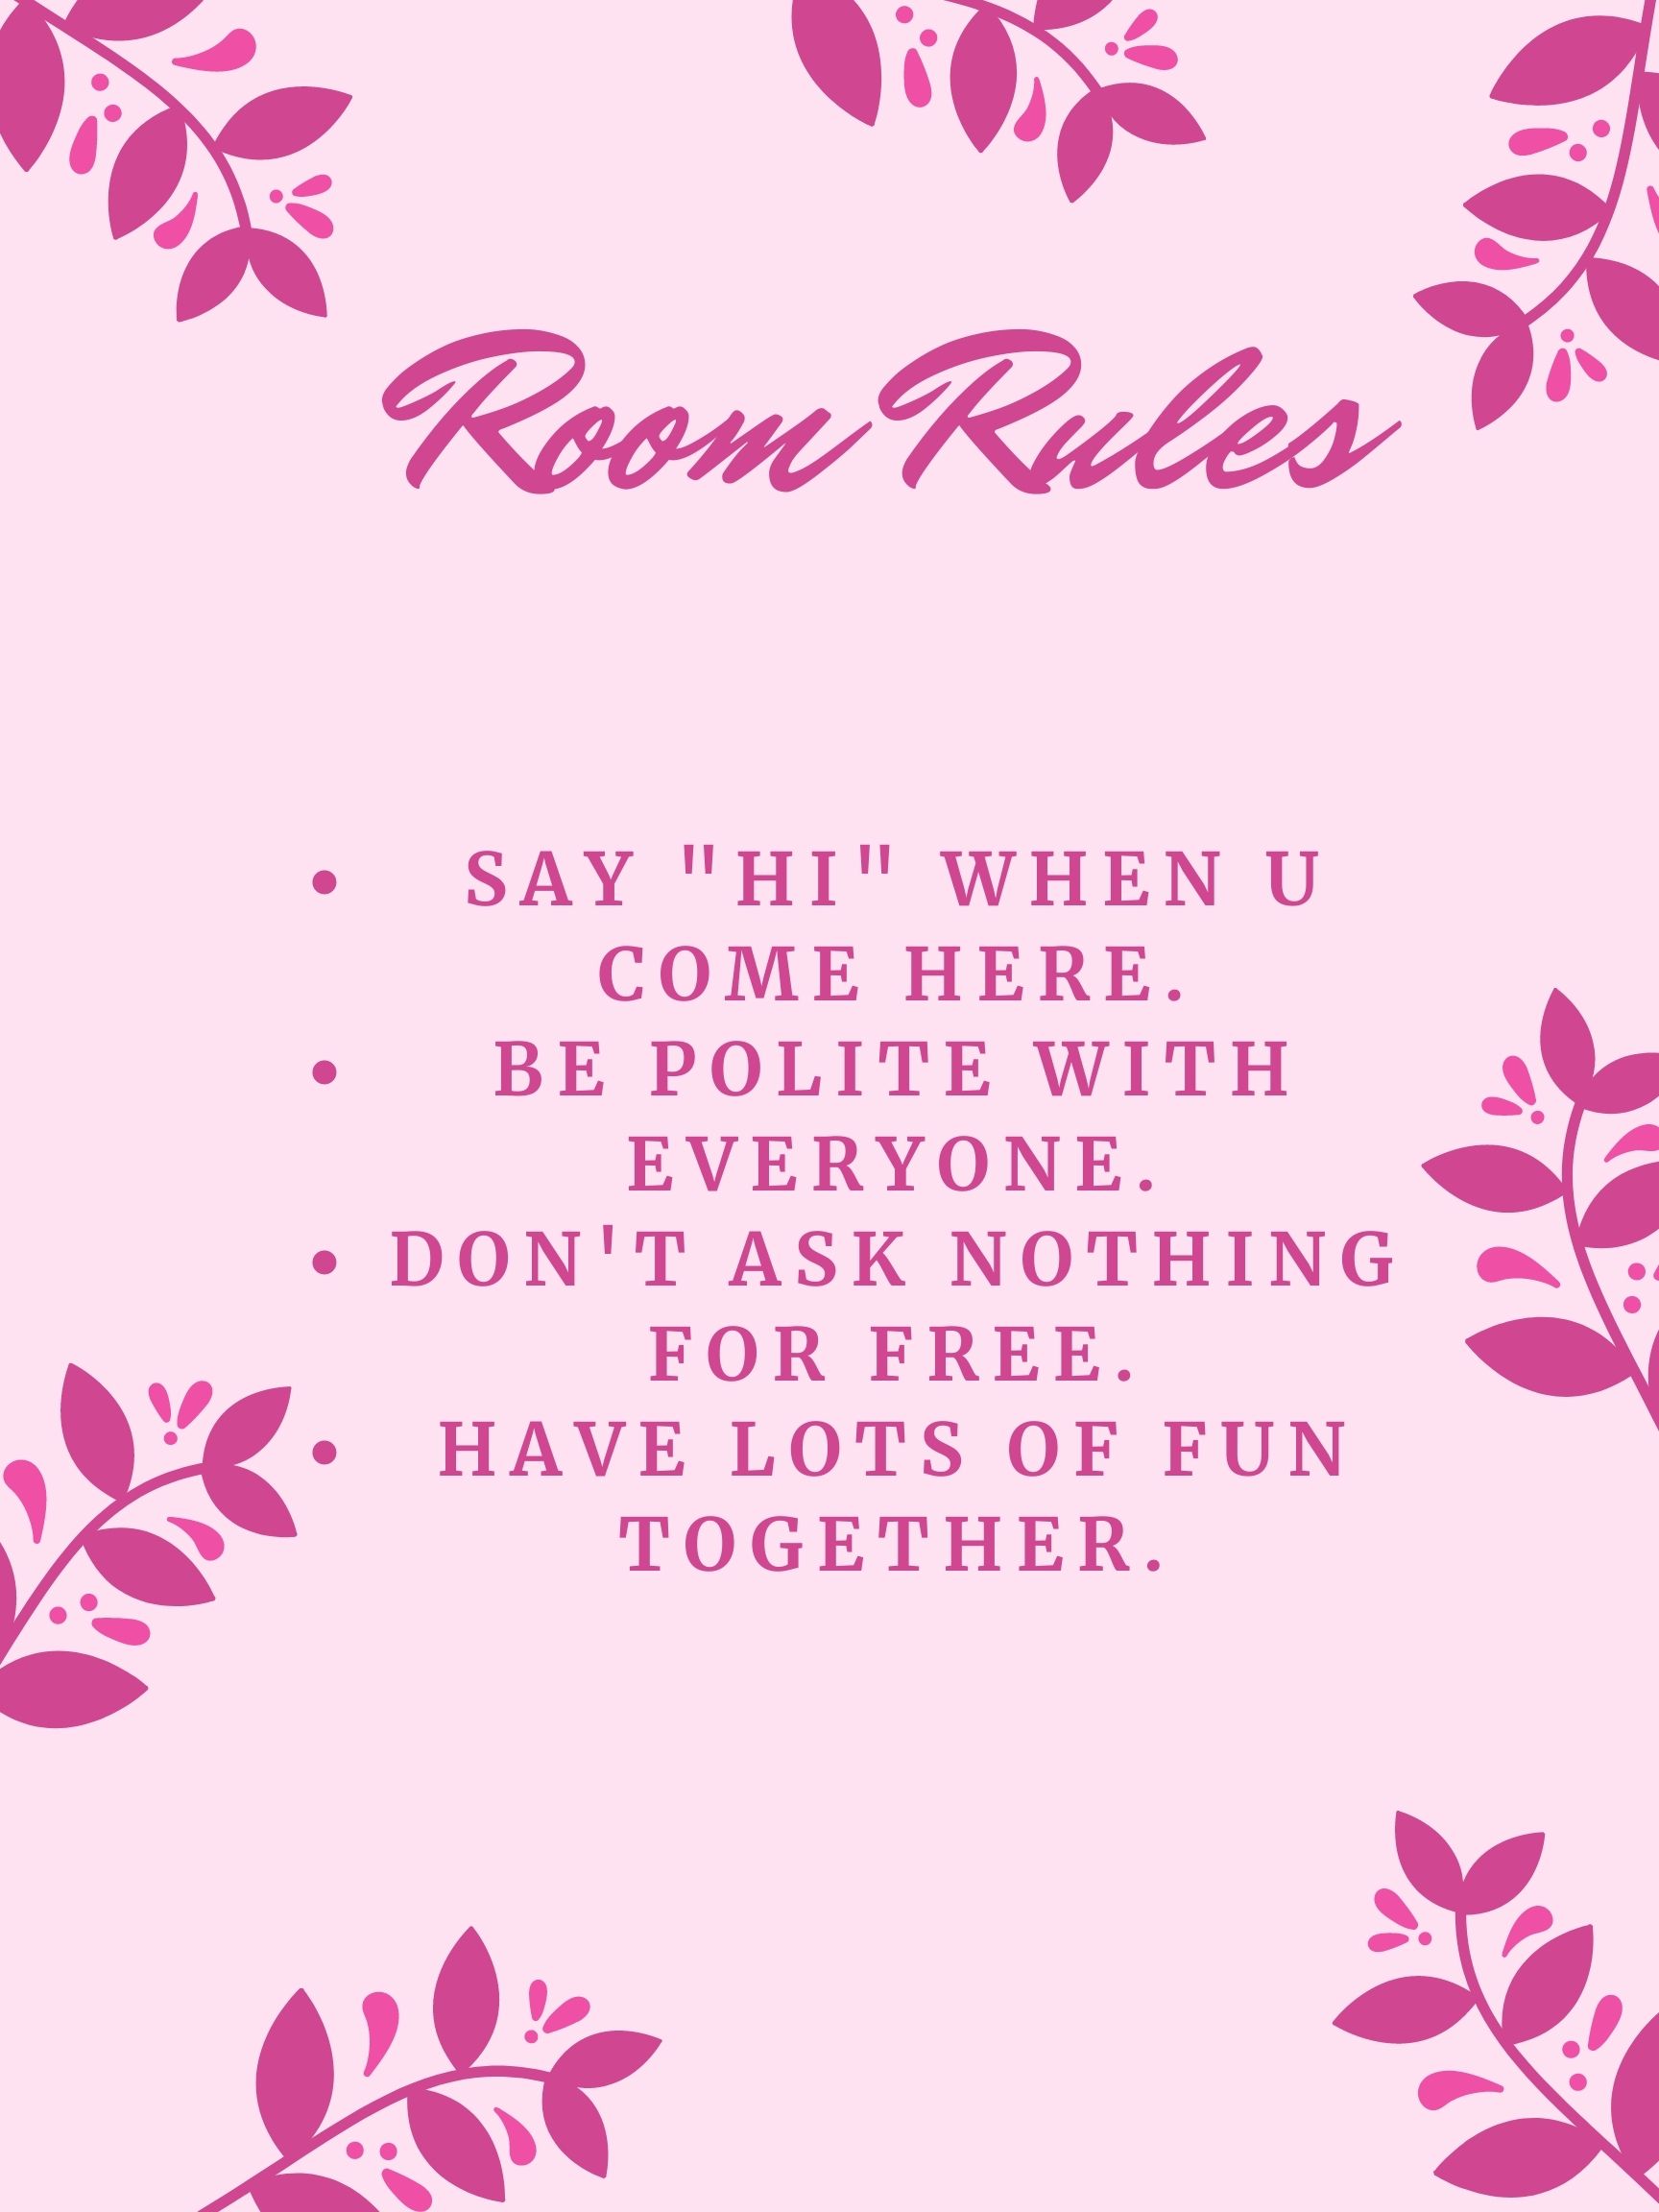 BlackSophie Room Rules image: 1